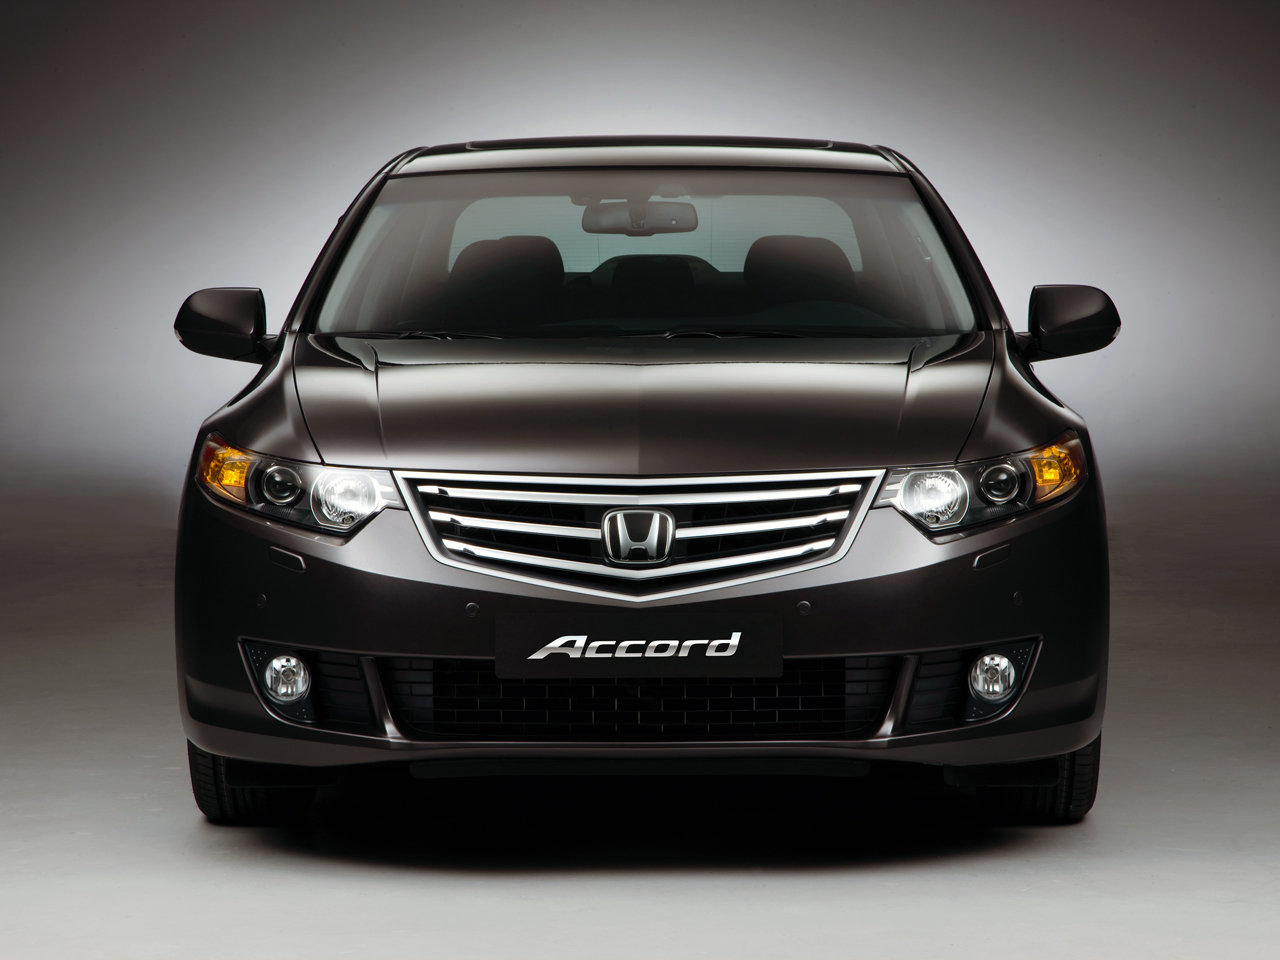 Honda Accord HD Wallpaper In Cars Imageci